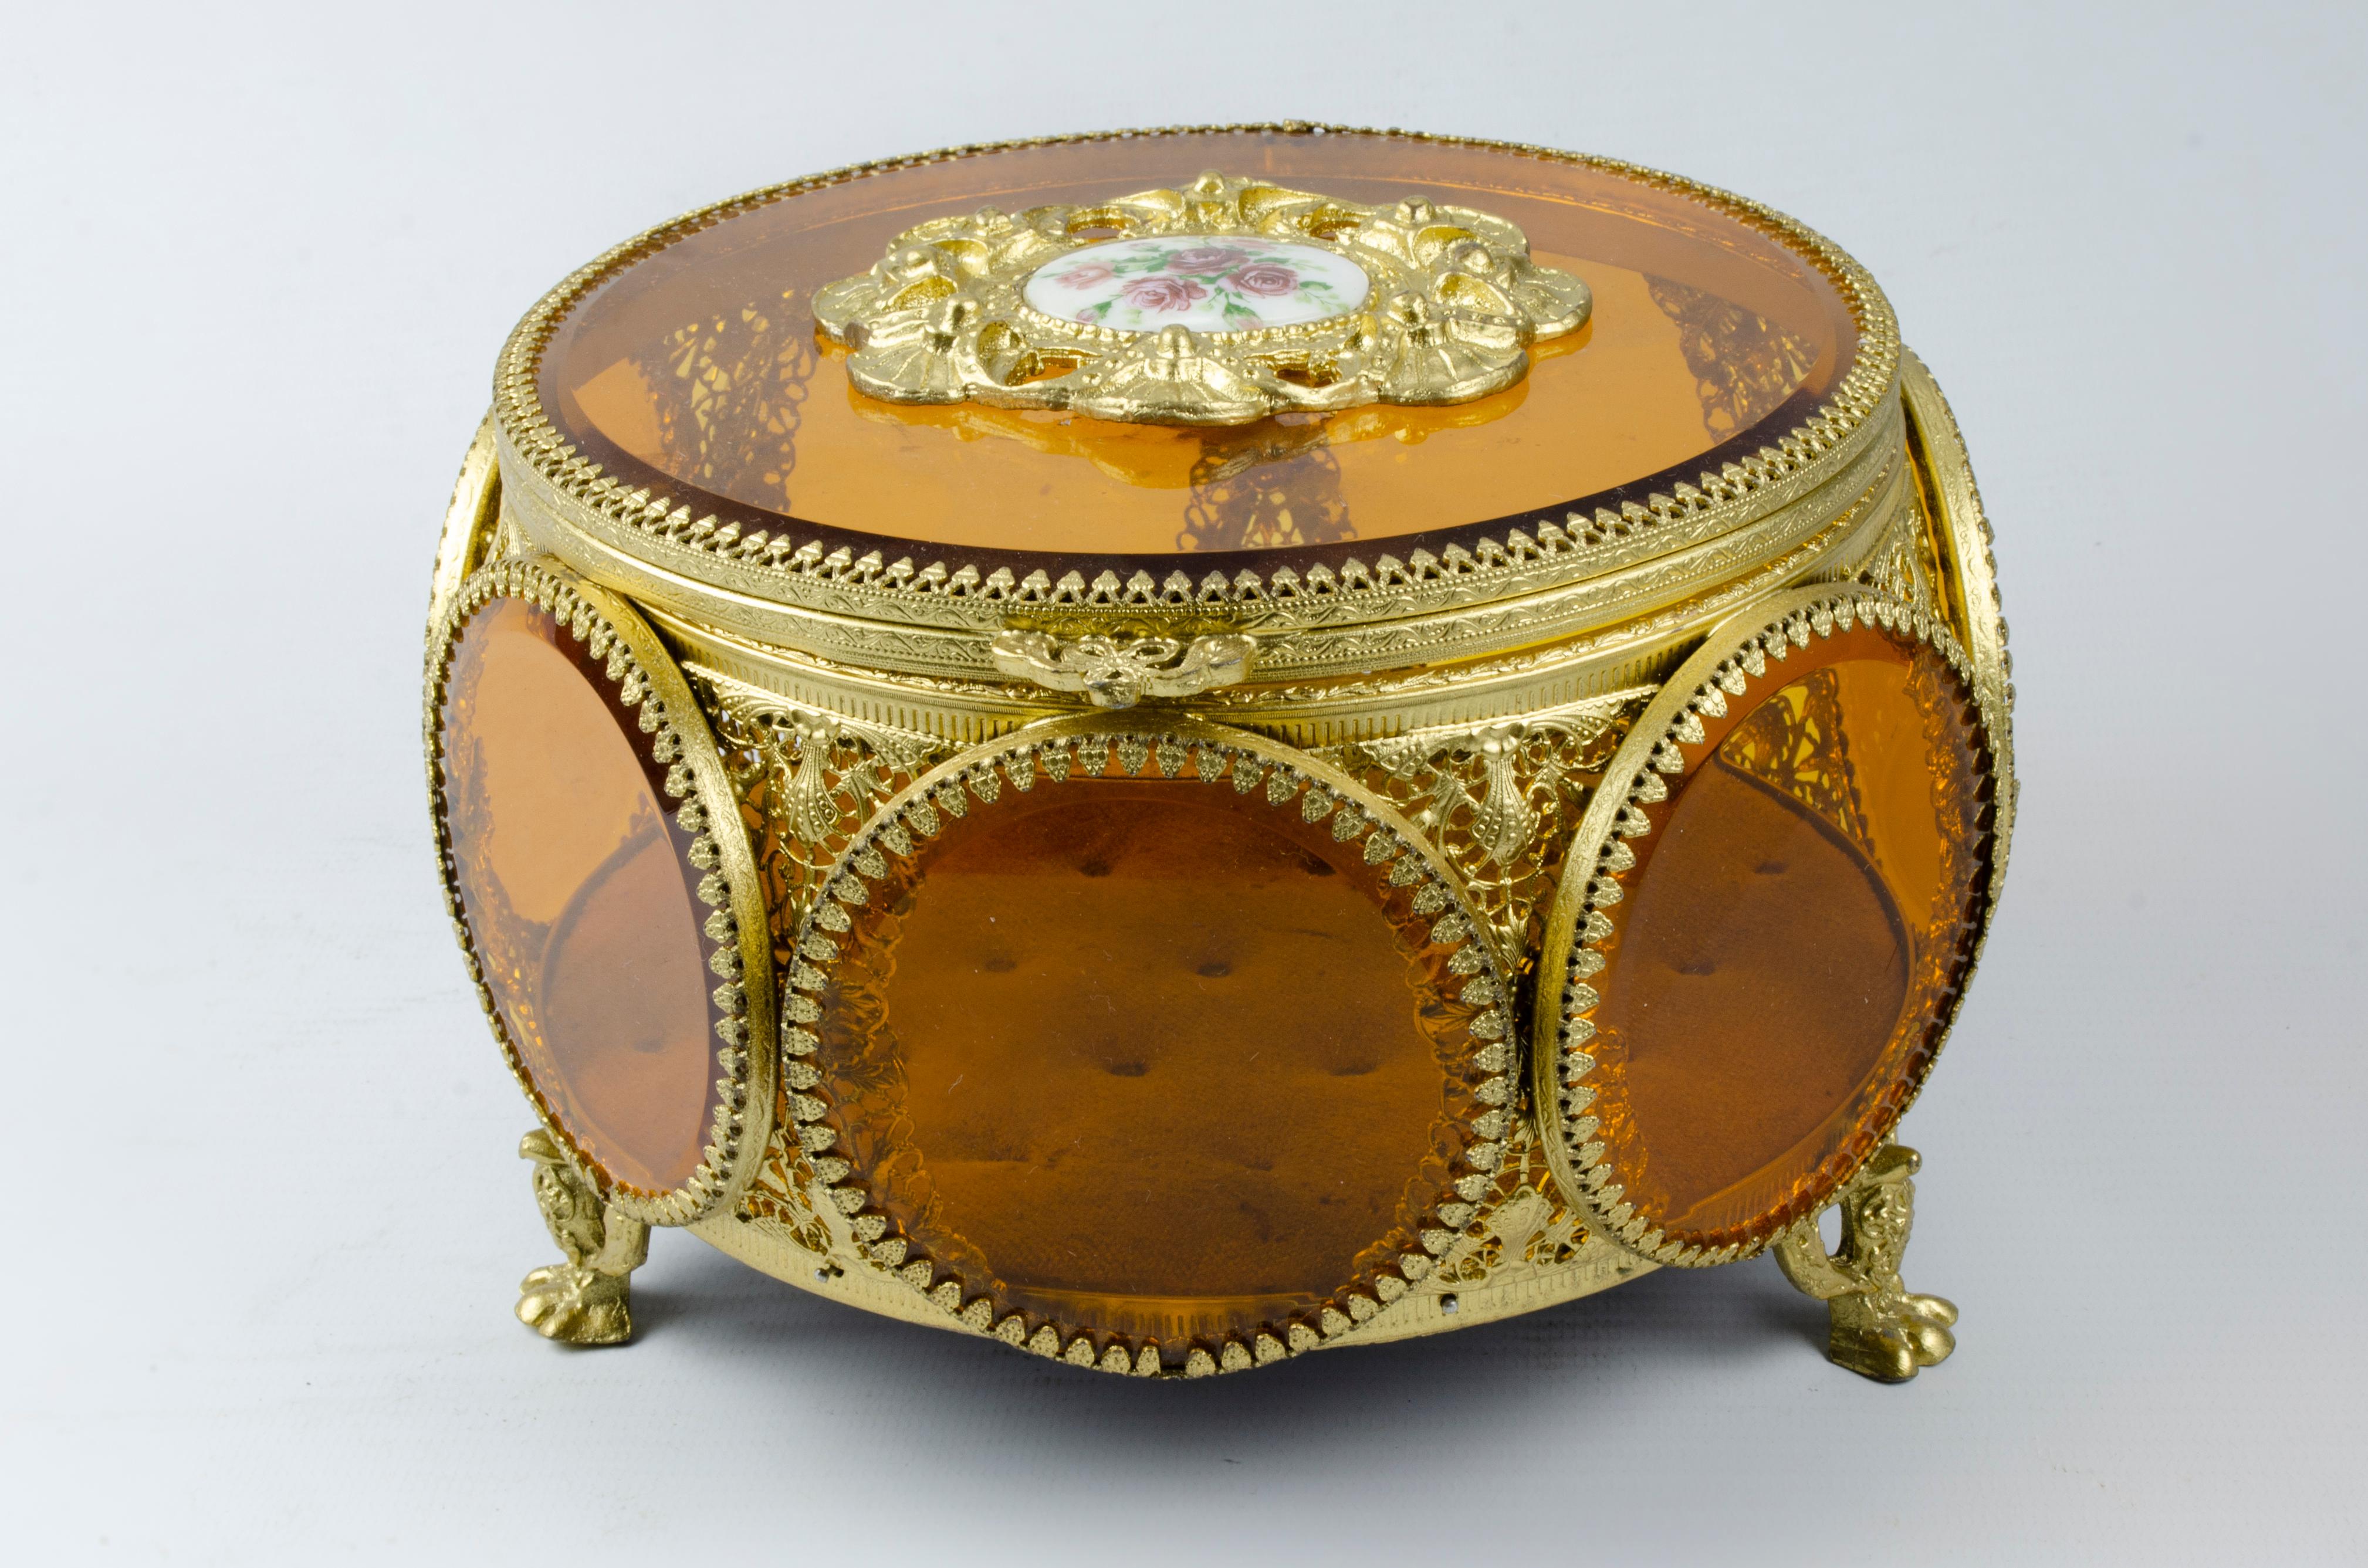 Joyero francés
Materiales: Bronce y cristal naranja
Origen Francia Circa 1900
Pátina dorada
perfecto estado
En su tapa tiene un plato de porcelana.